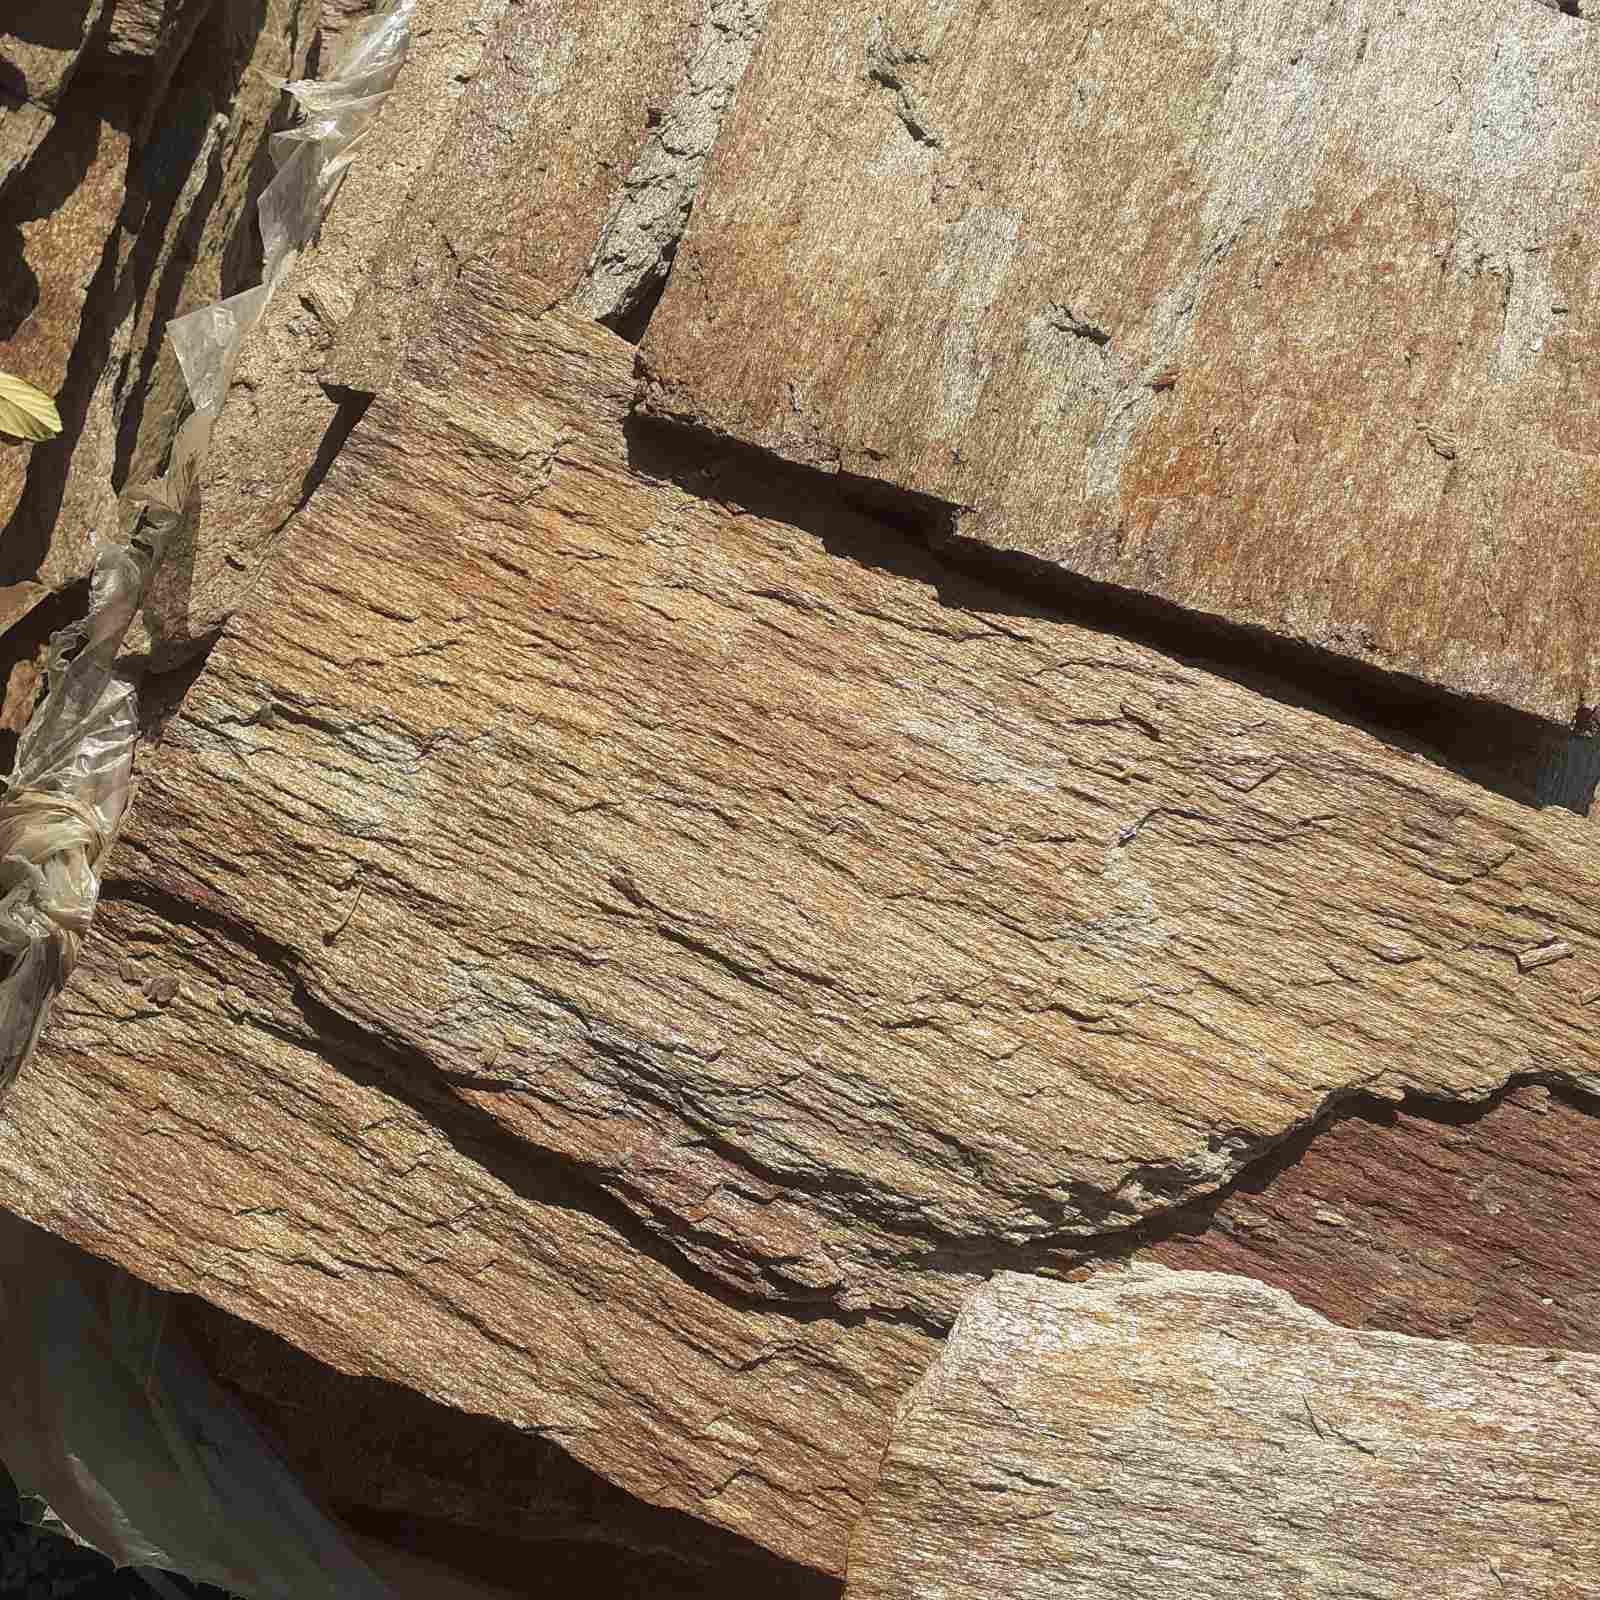 КаменнаяплиткаЗлатолит-ЗОЛОТАЯКОРАДЕРЕВА22кг/0,5м2./дляоблицовкистен,дорожек,печей